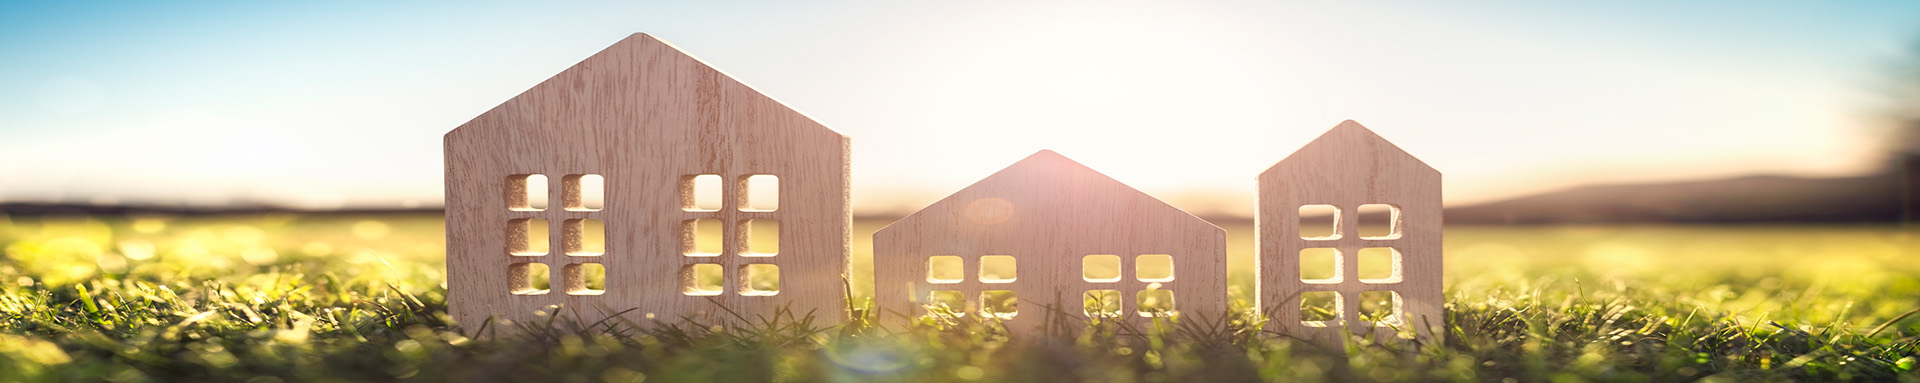 Drewniane figurki w kształcie domów